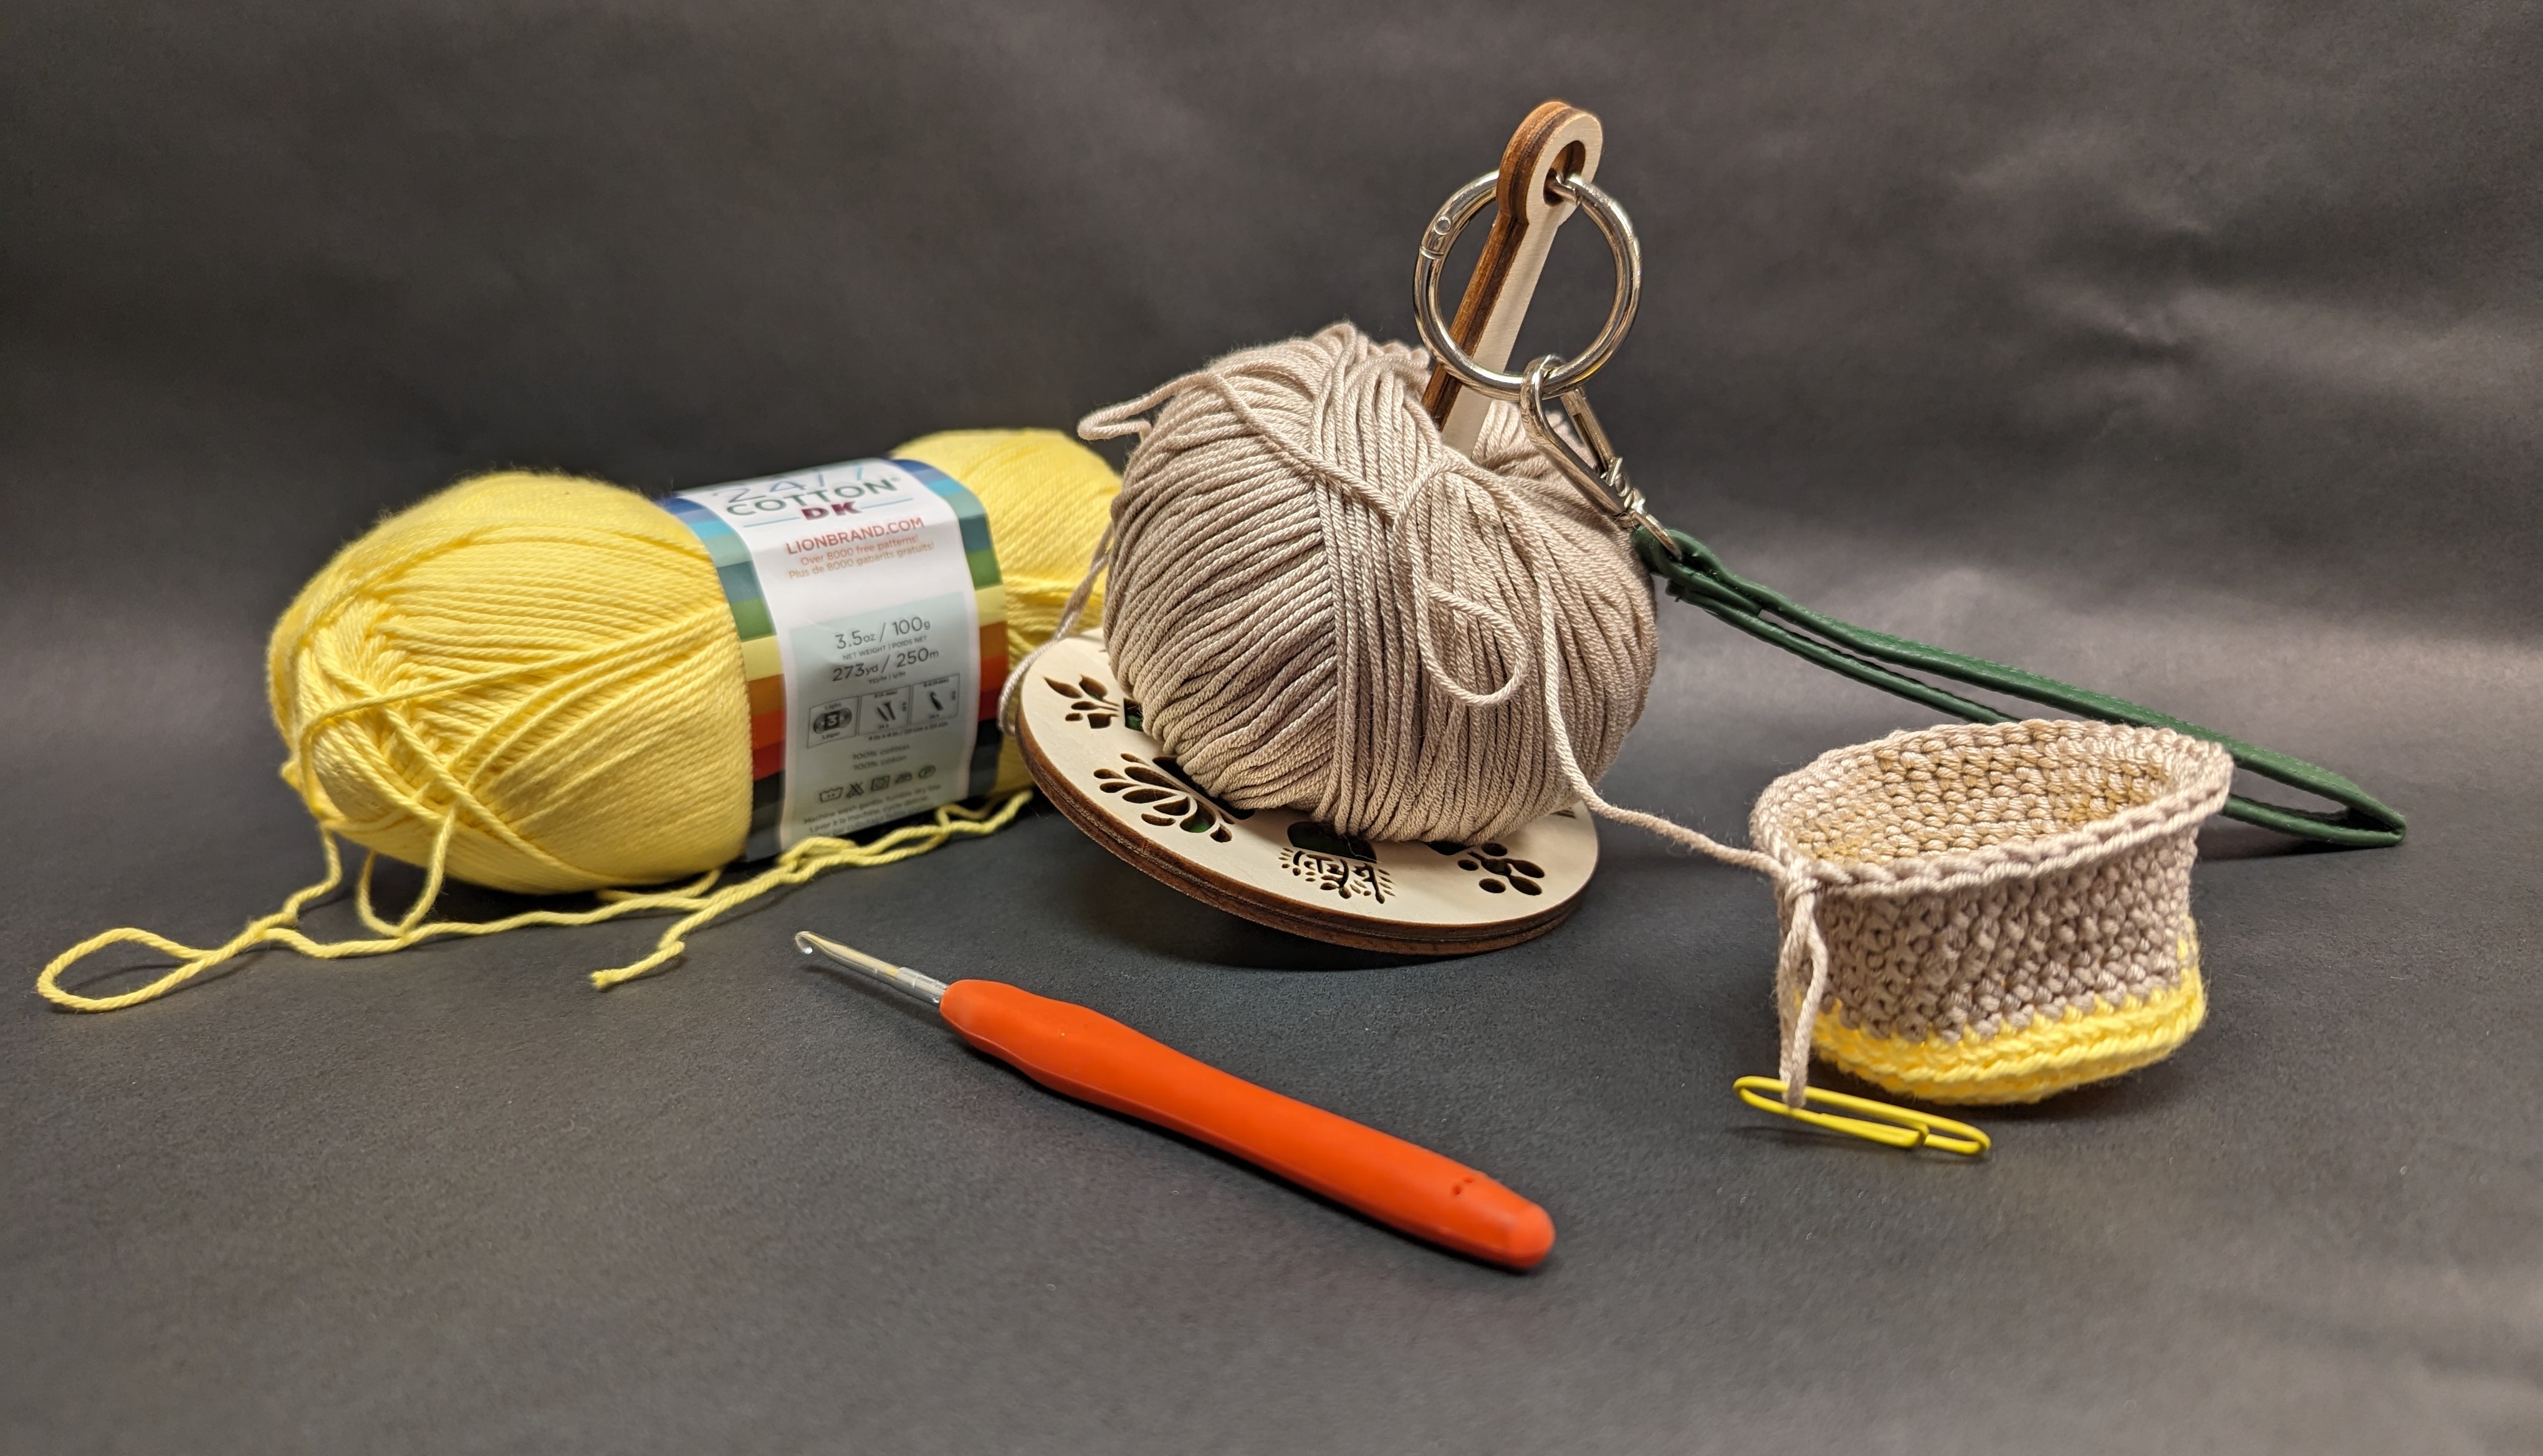 Crochet flowerpot project in progress